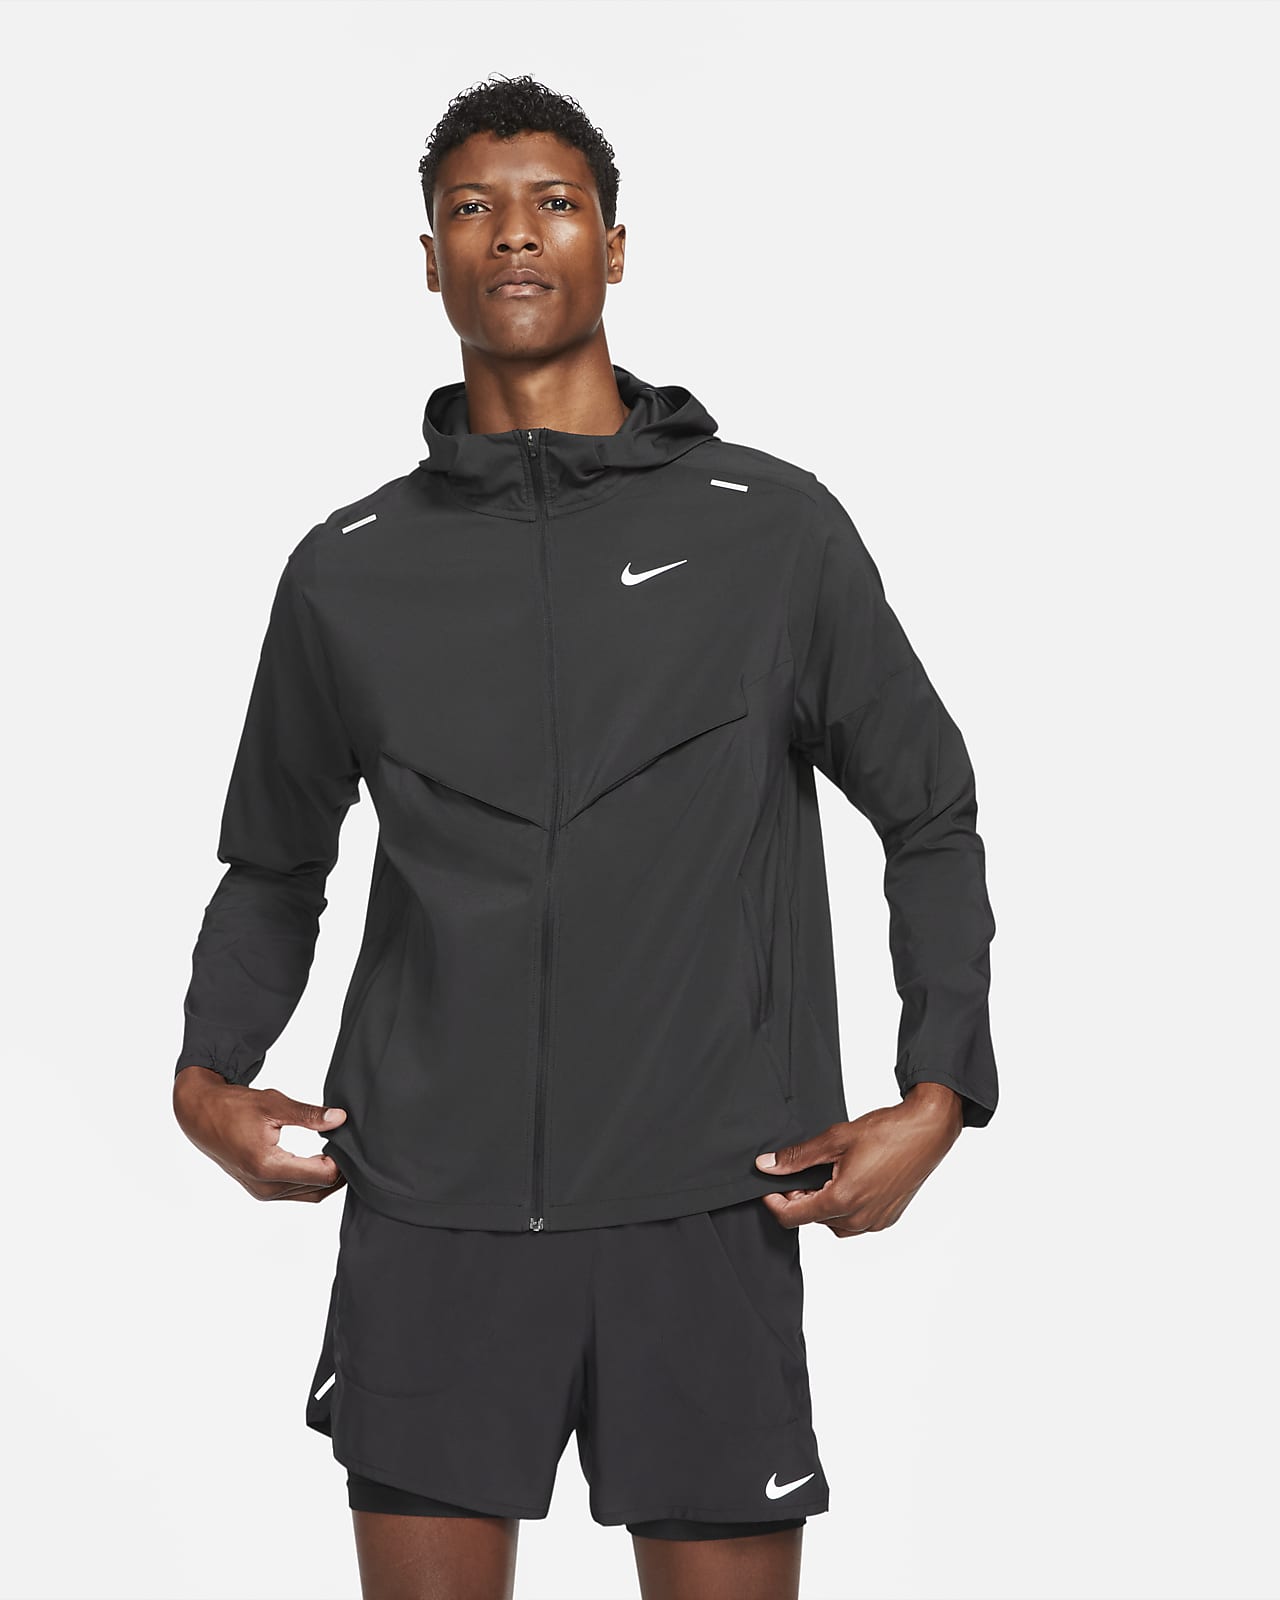 Löparjacka Nike Windrunner för män